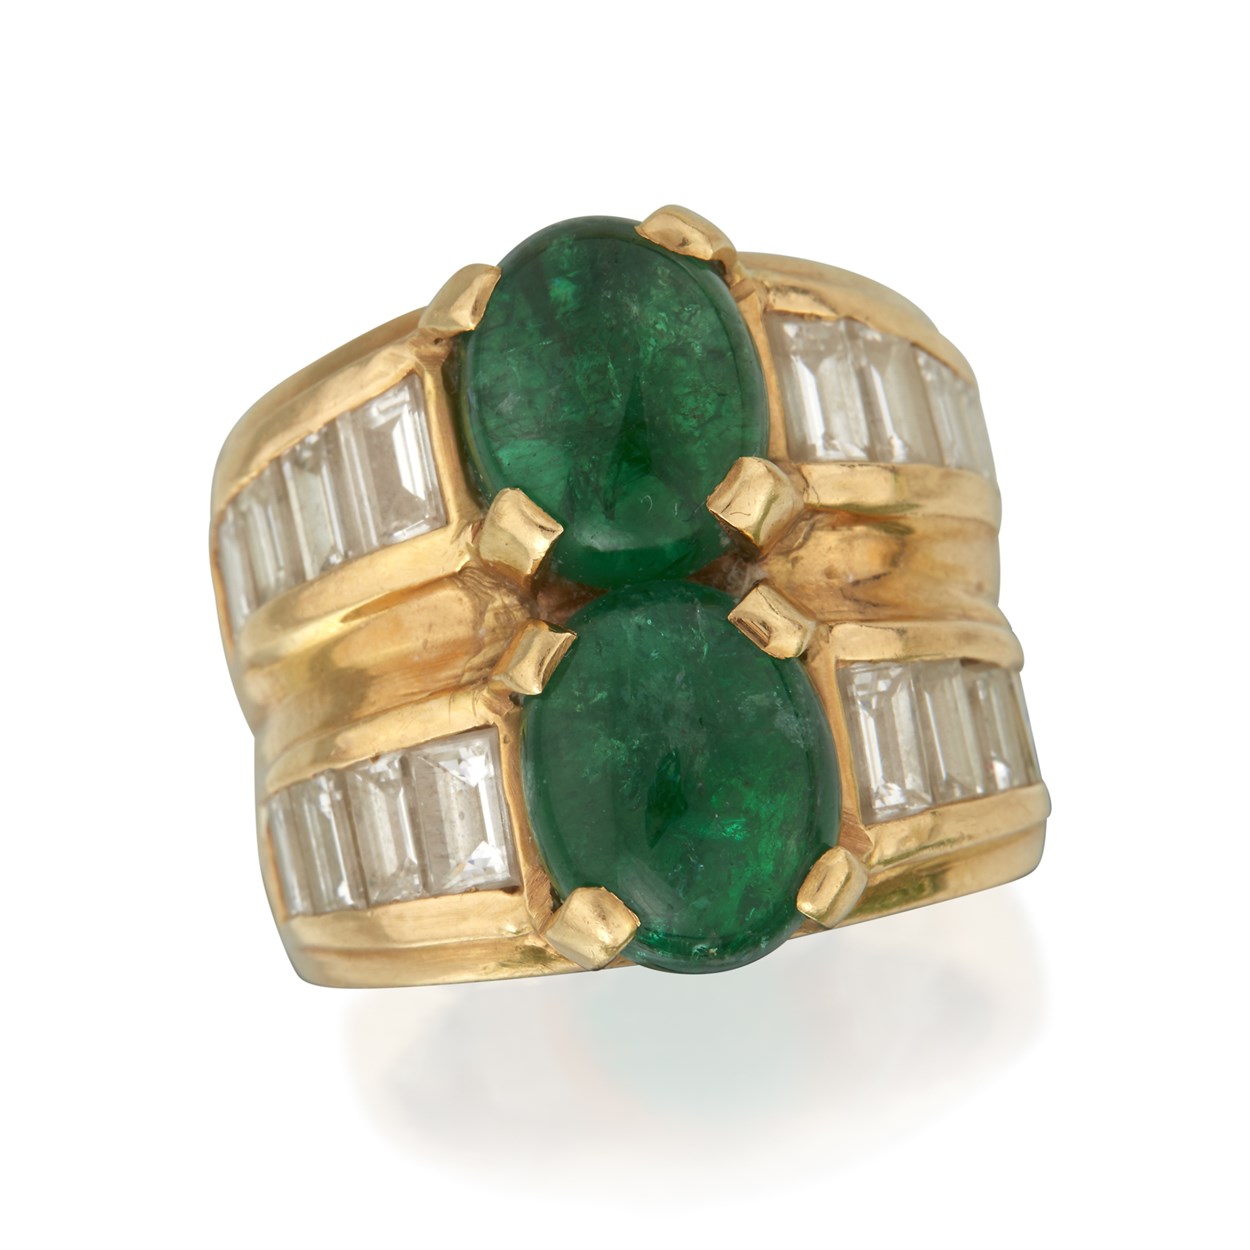 Lot 50 - An eighteen karat gold, emerald, and diamond ring